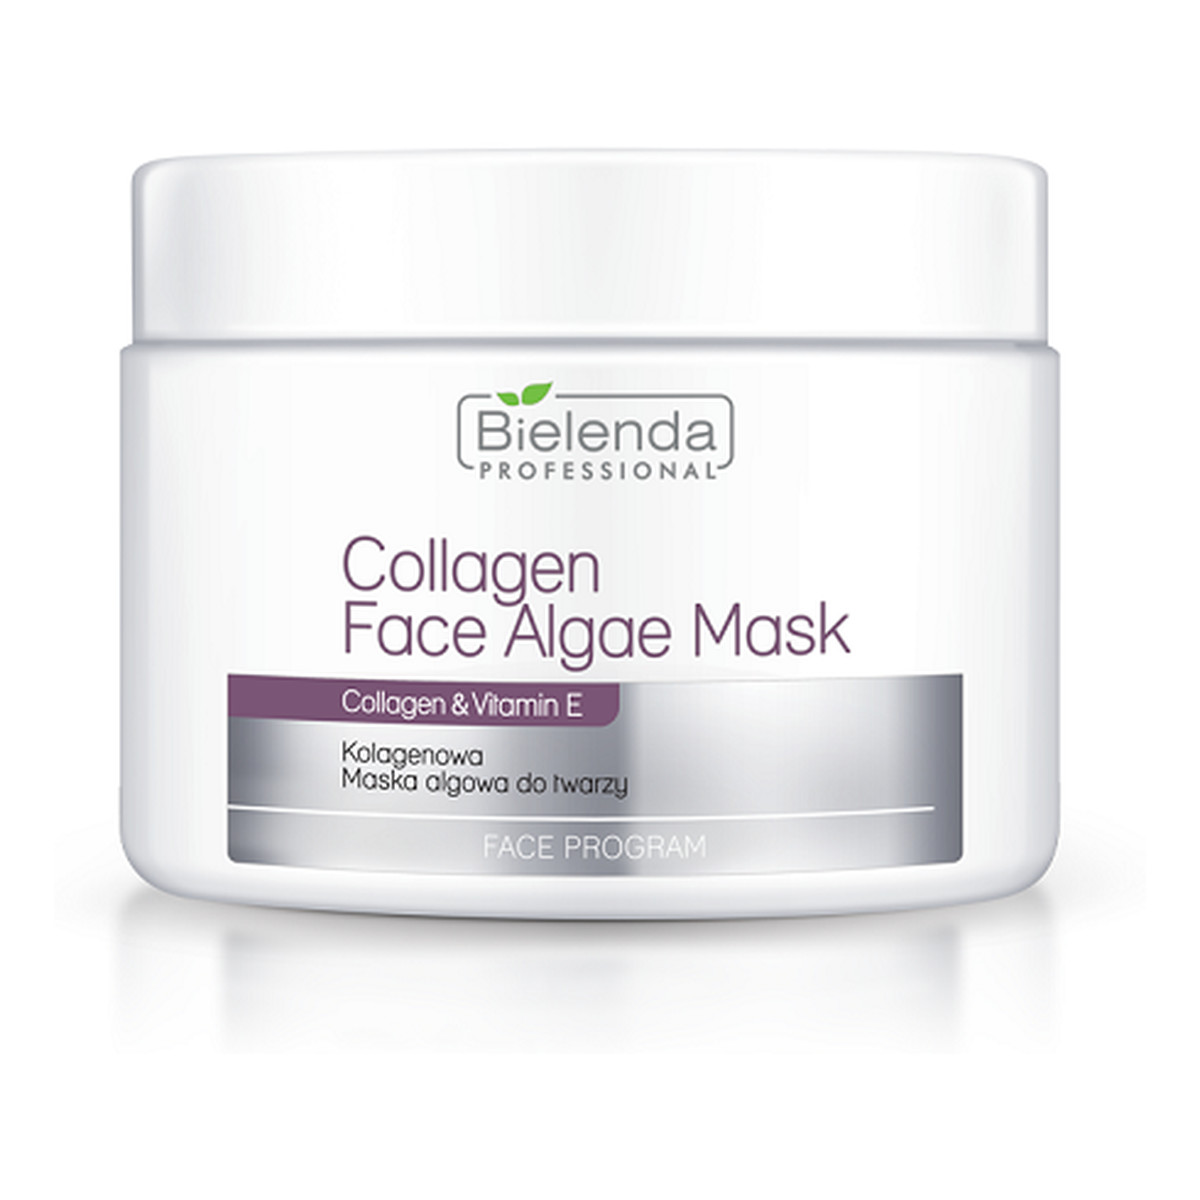 Bielenda Professional Collagen Face Algae Mask Maska Algowa Kolagenowa Cera Wymagająca Nawilżenia i Liftingu 190g